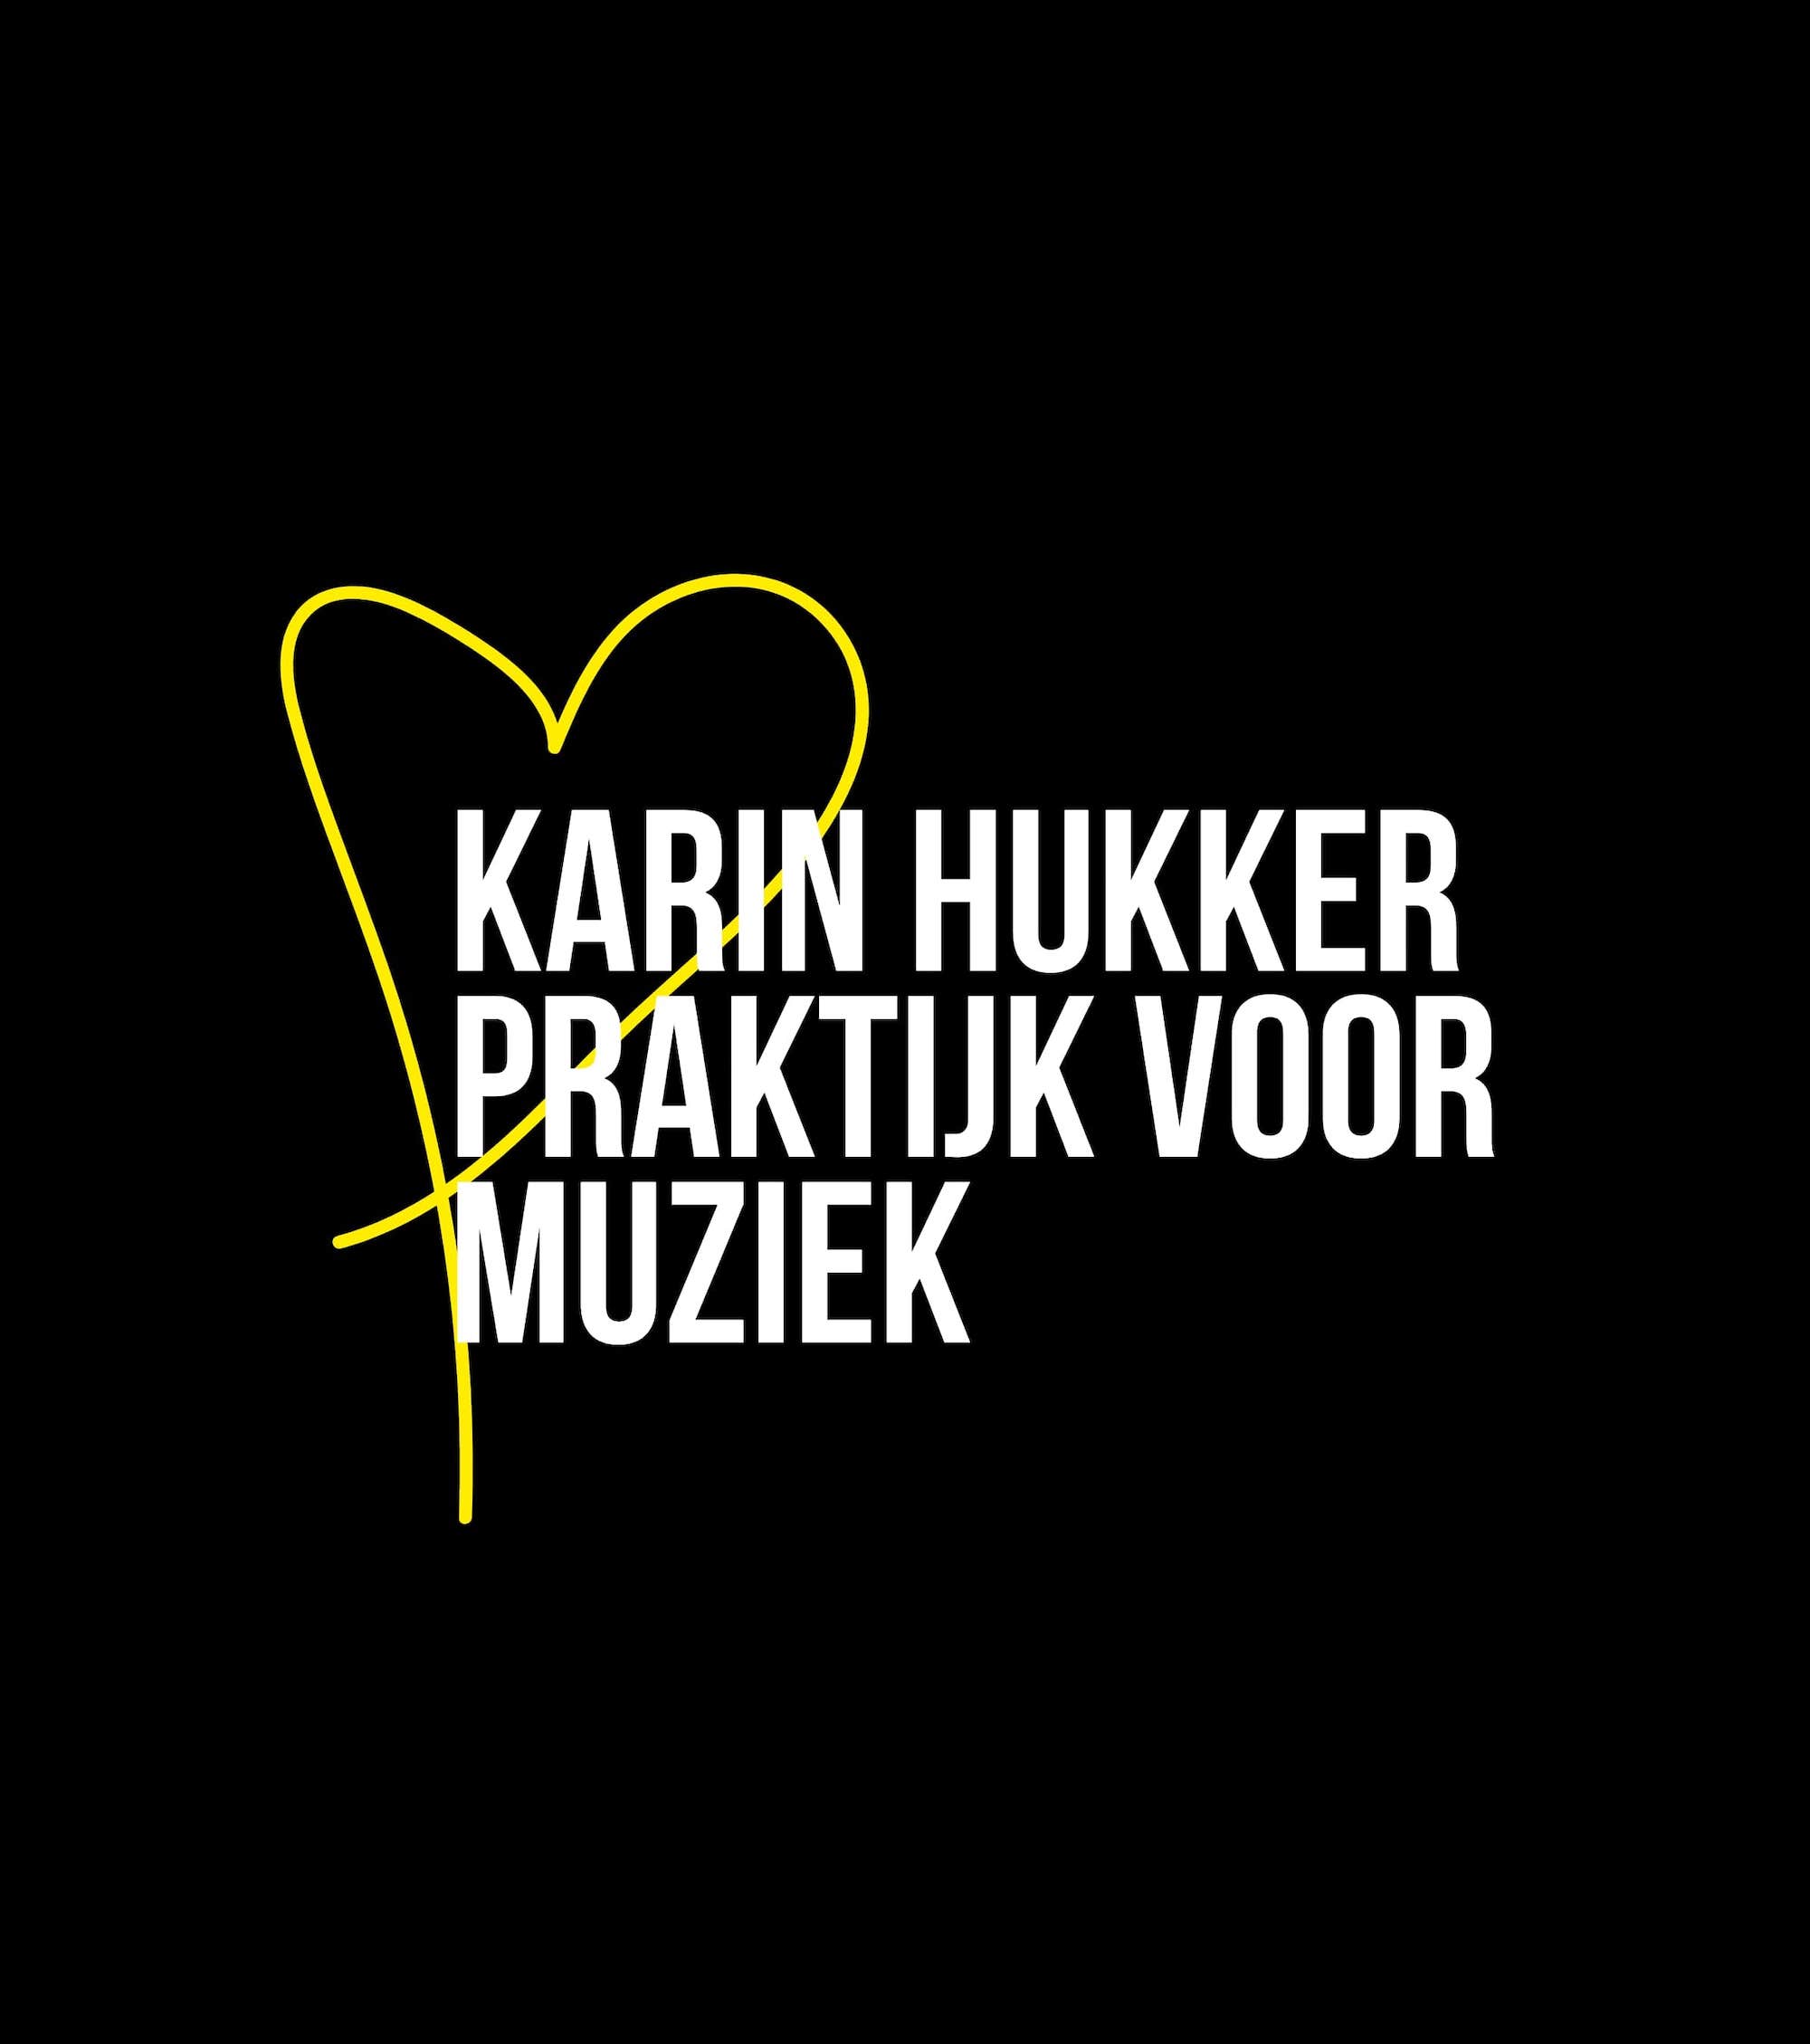 Met de pet rond - Ambassadeur: Karin Hukker Praktijk voor muziek